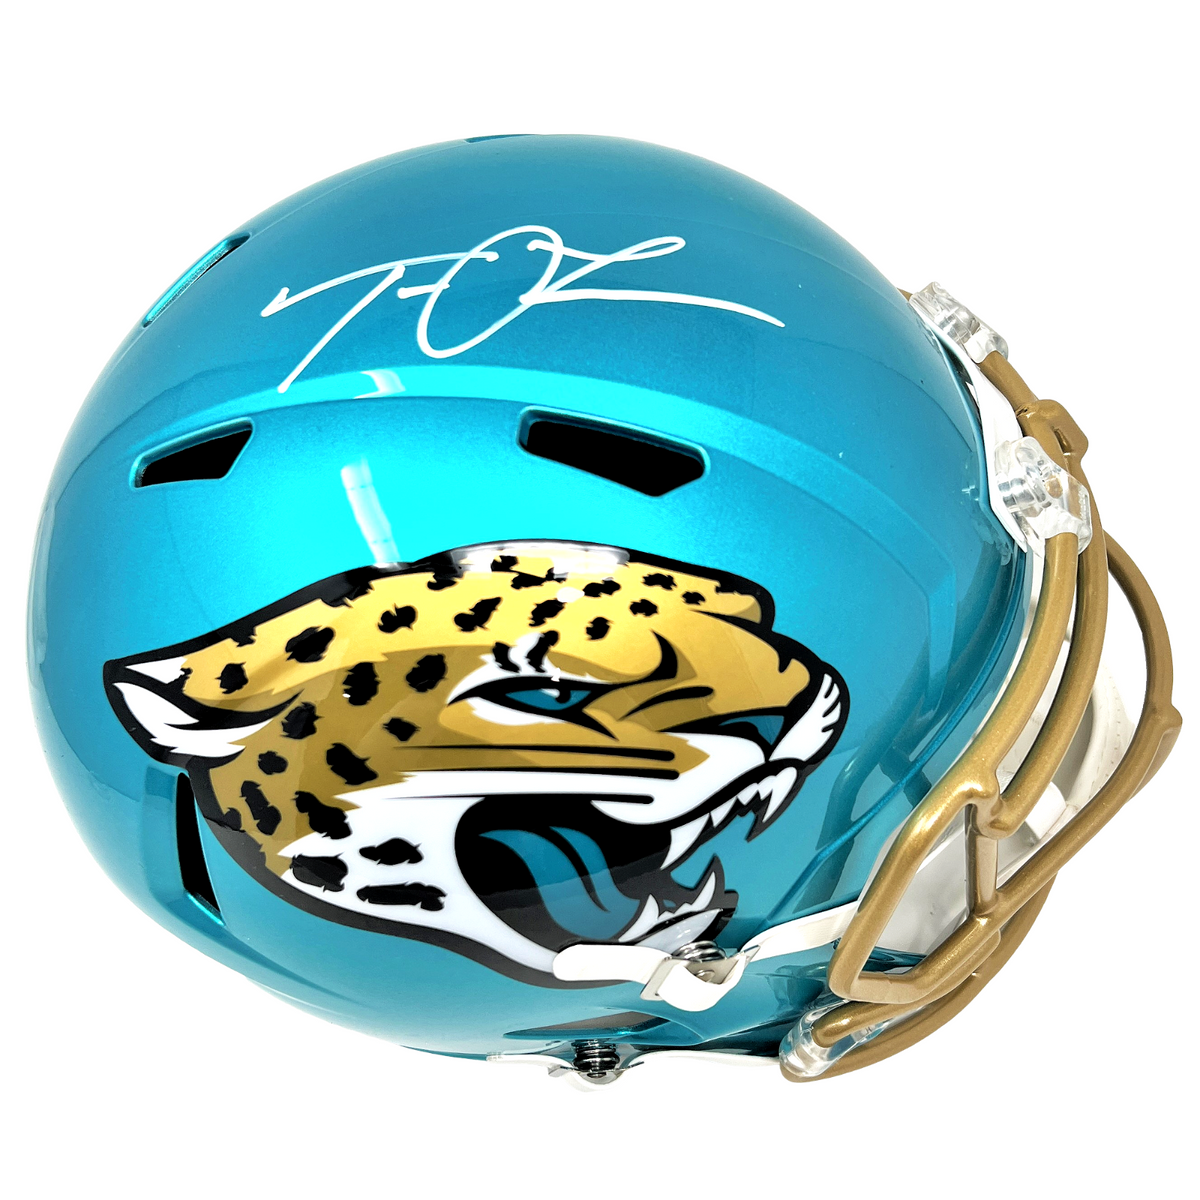 jacksonville jaguars teal helmet